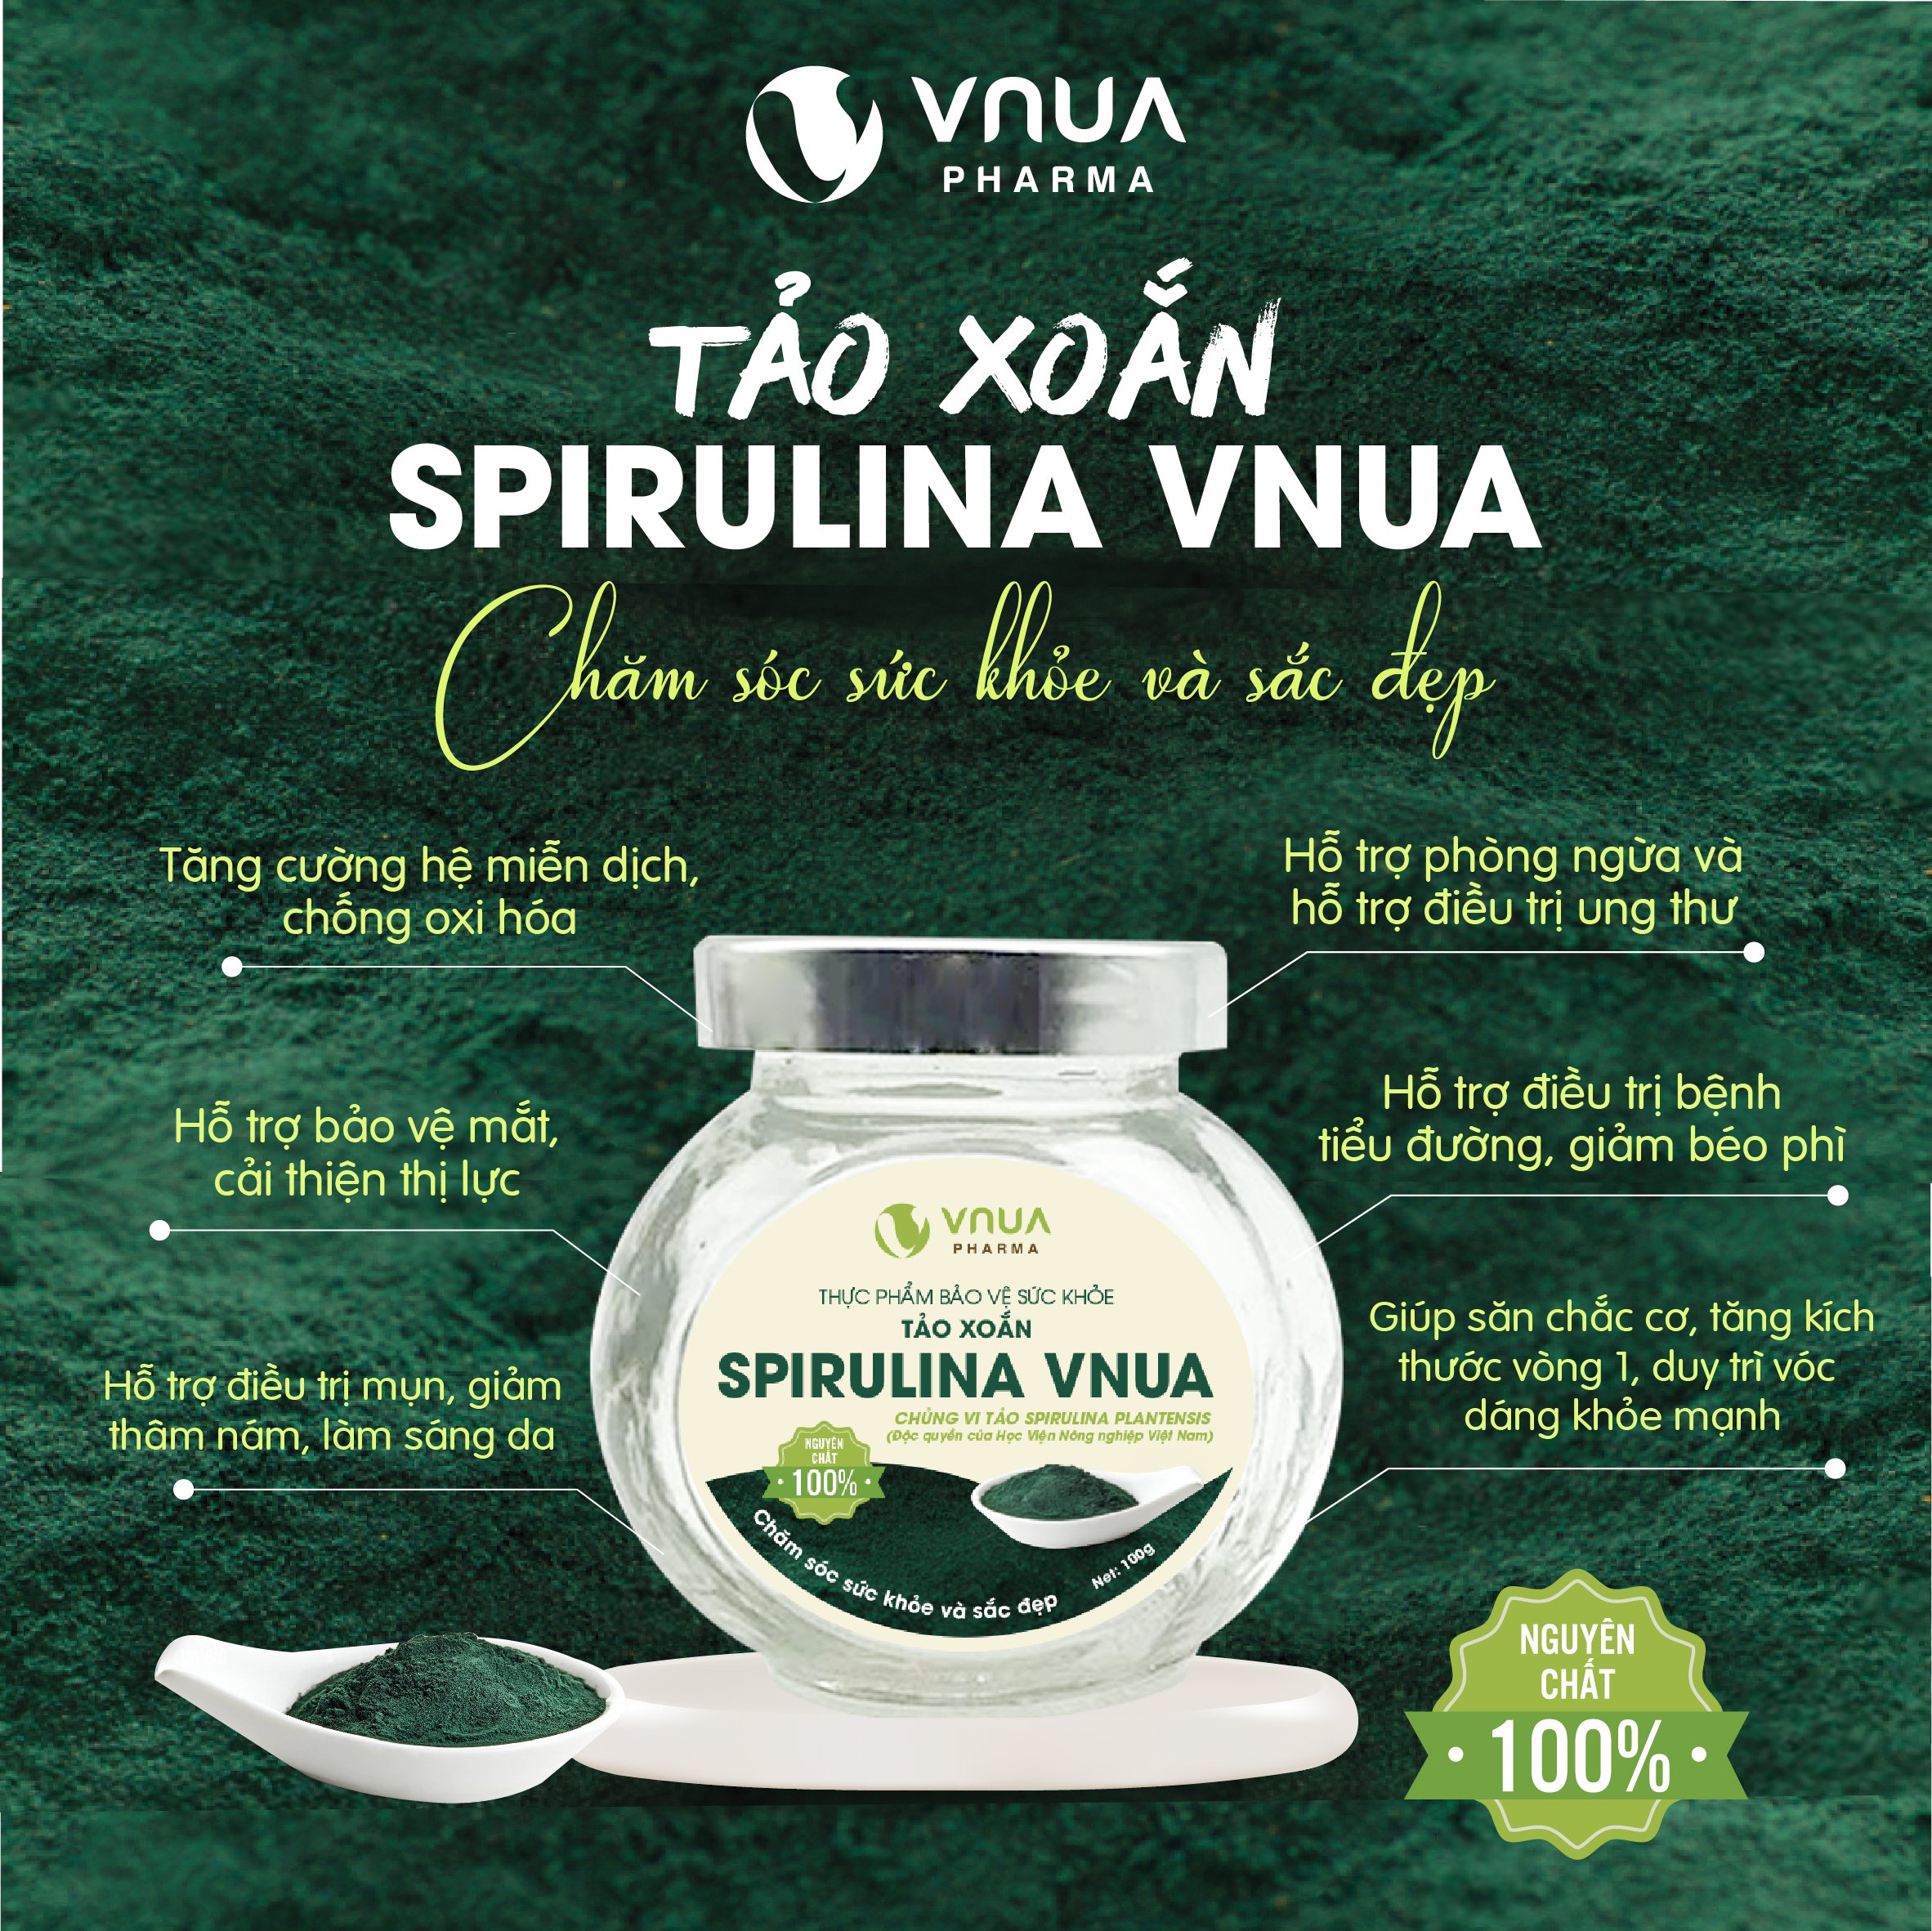 Tảo xoắn Spirulina VNUA nguyên chất dạng bột 100%